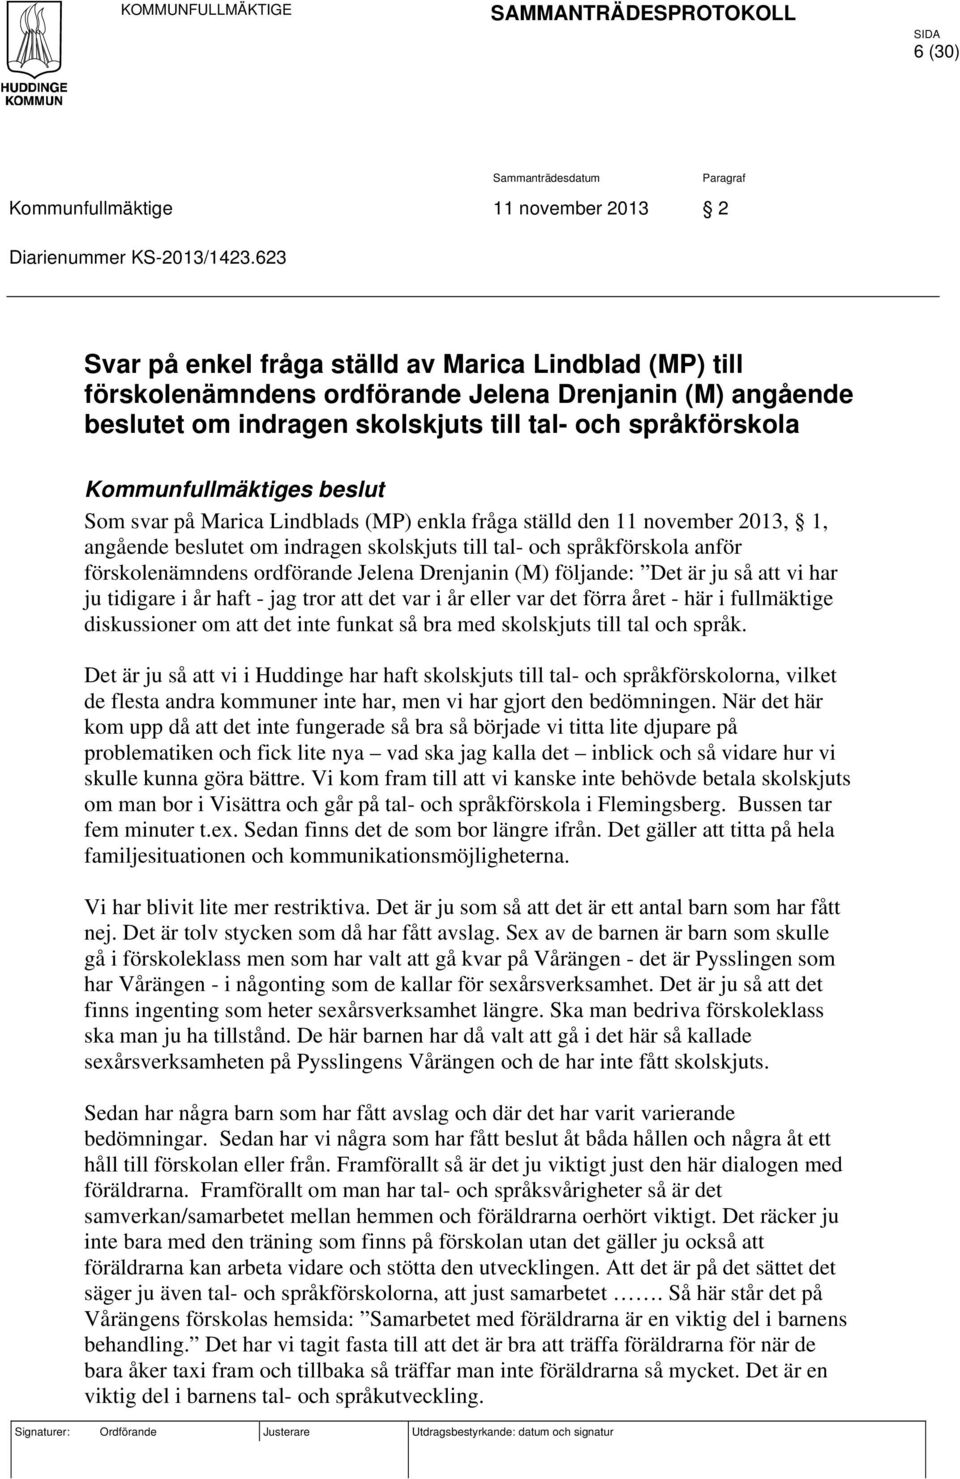 beslut Som svar på Marica Lindblads (MP) enkla fråga ställd den 11 november 2013, 1, angående beslutet om indragen skolskjuts till tal- och språkförskola anför förskolenämndens ordförande Jelena